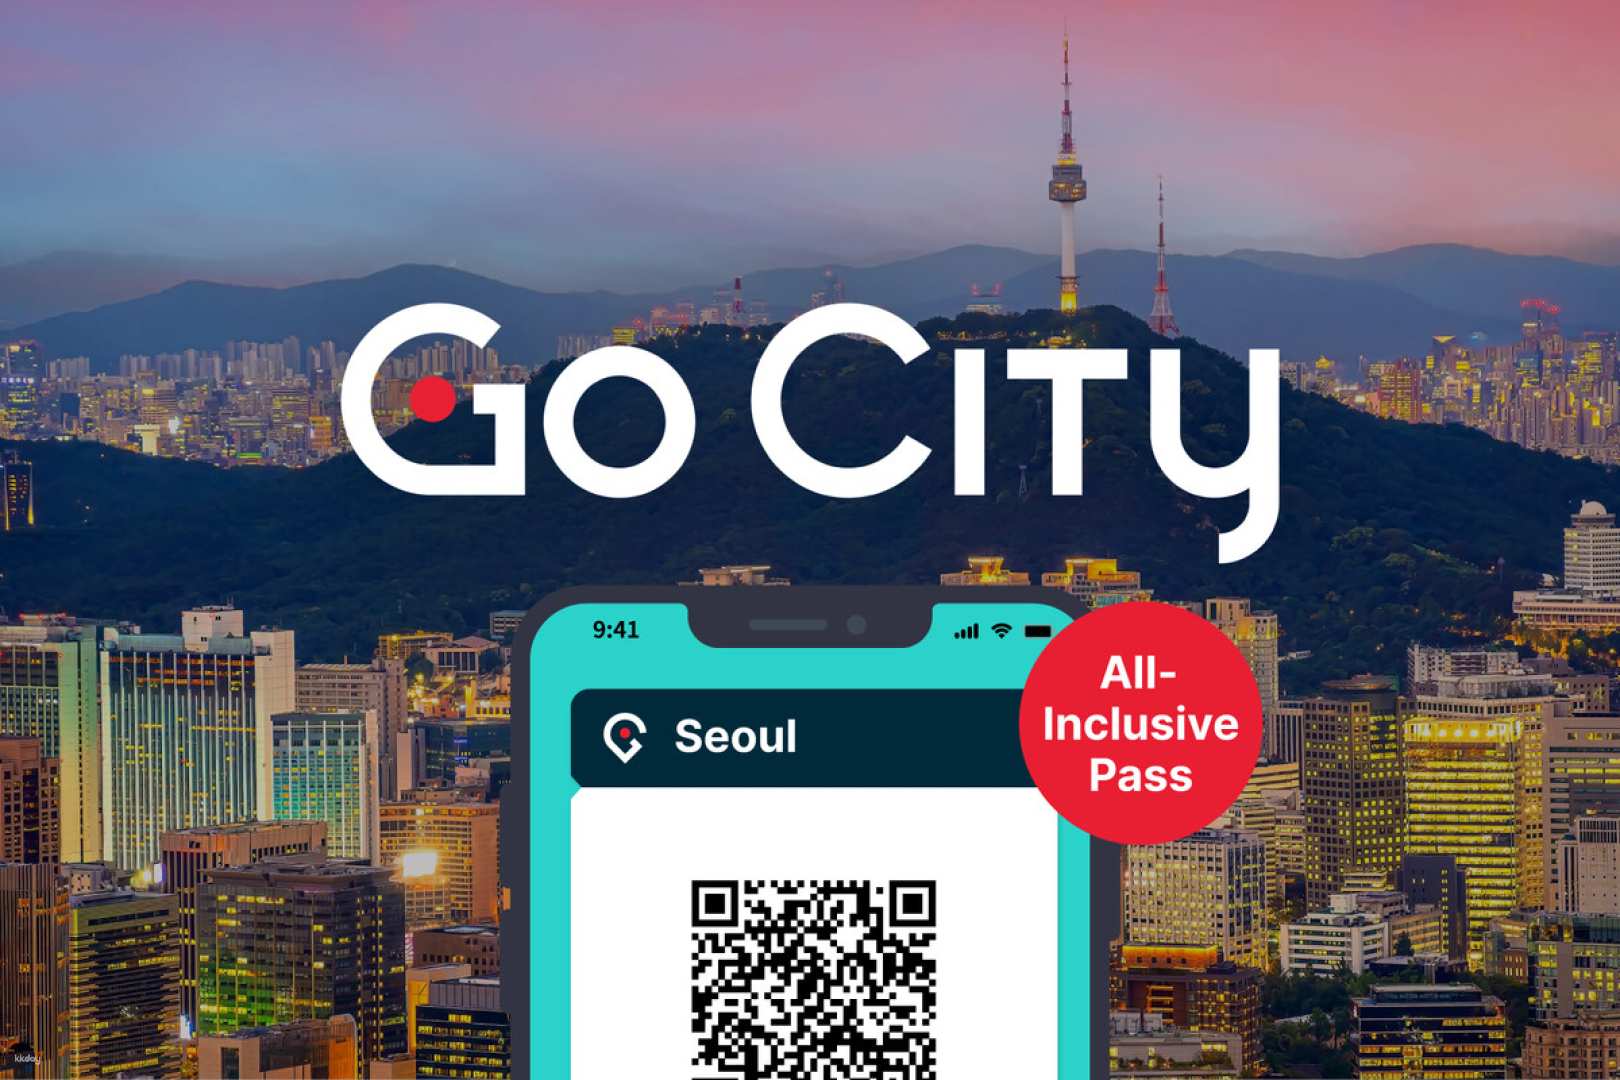 韓國-首爾全天暢遊通行證 Seoul All-Inclusive Pass| 自選天數